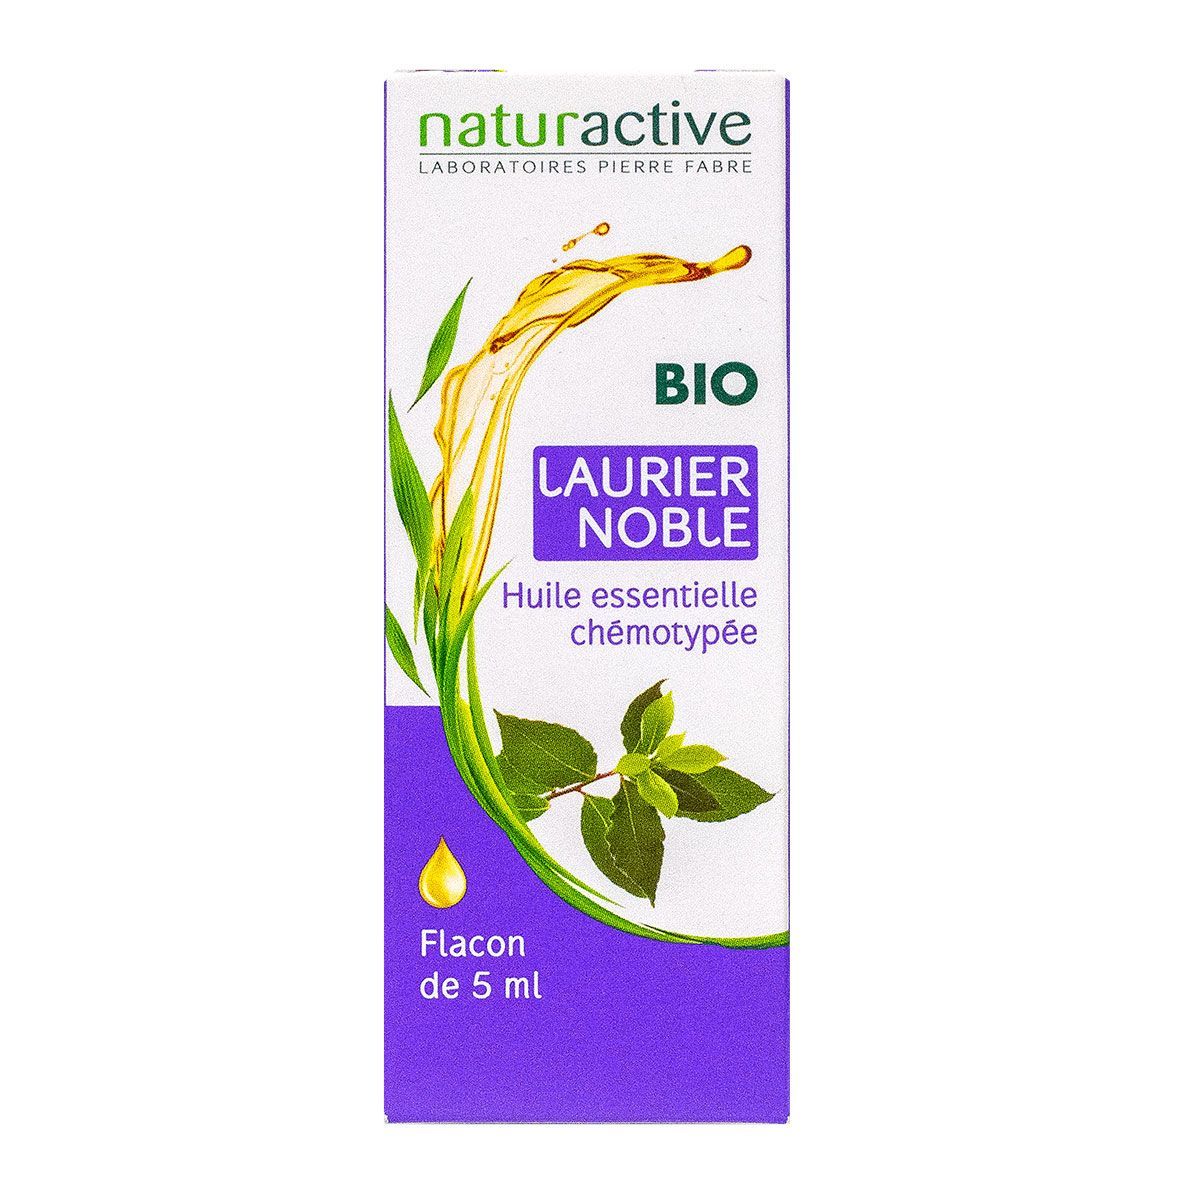 Huile Essentielle Laurier Noble (Lauraus nobilis L.) 5 ml